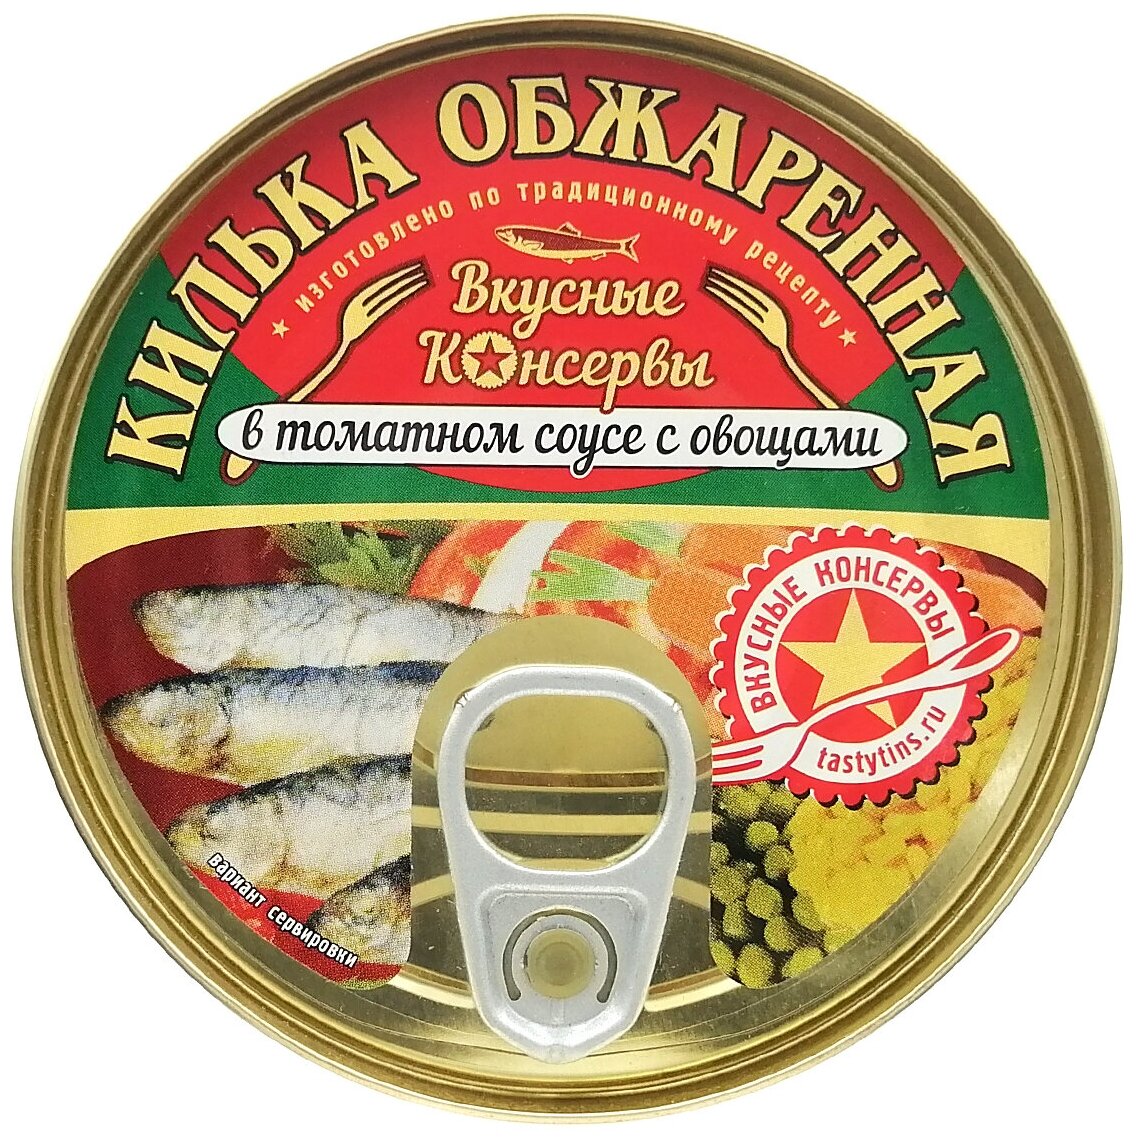 Консервы рыбные - Килька обжаренная в томатном соусе с овощами, 240 г - 2 шт